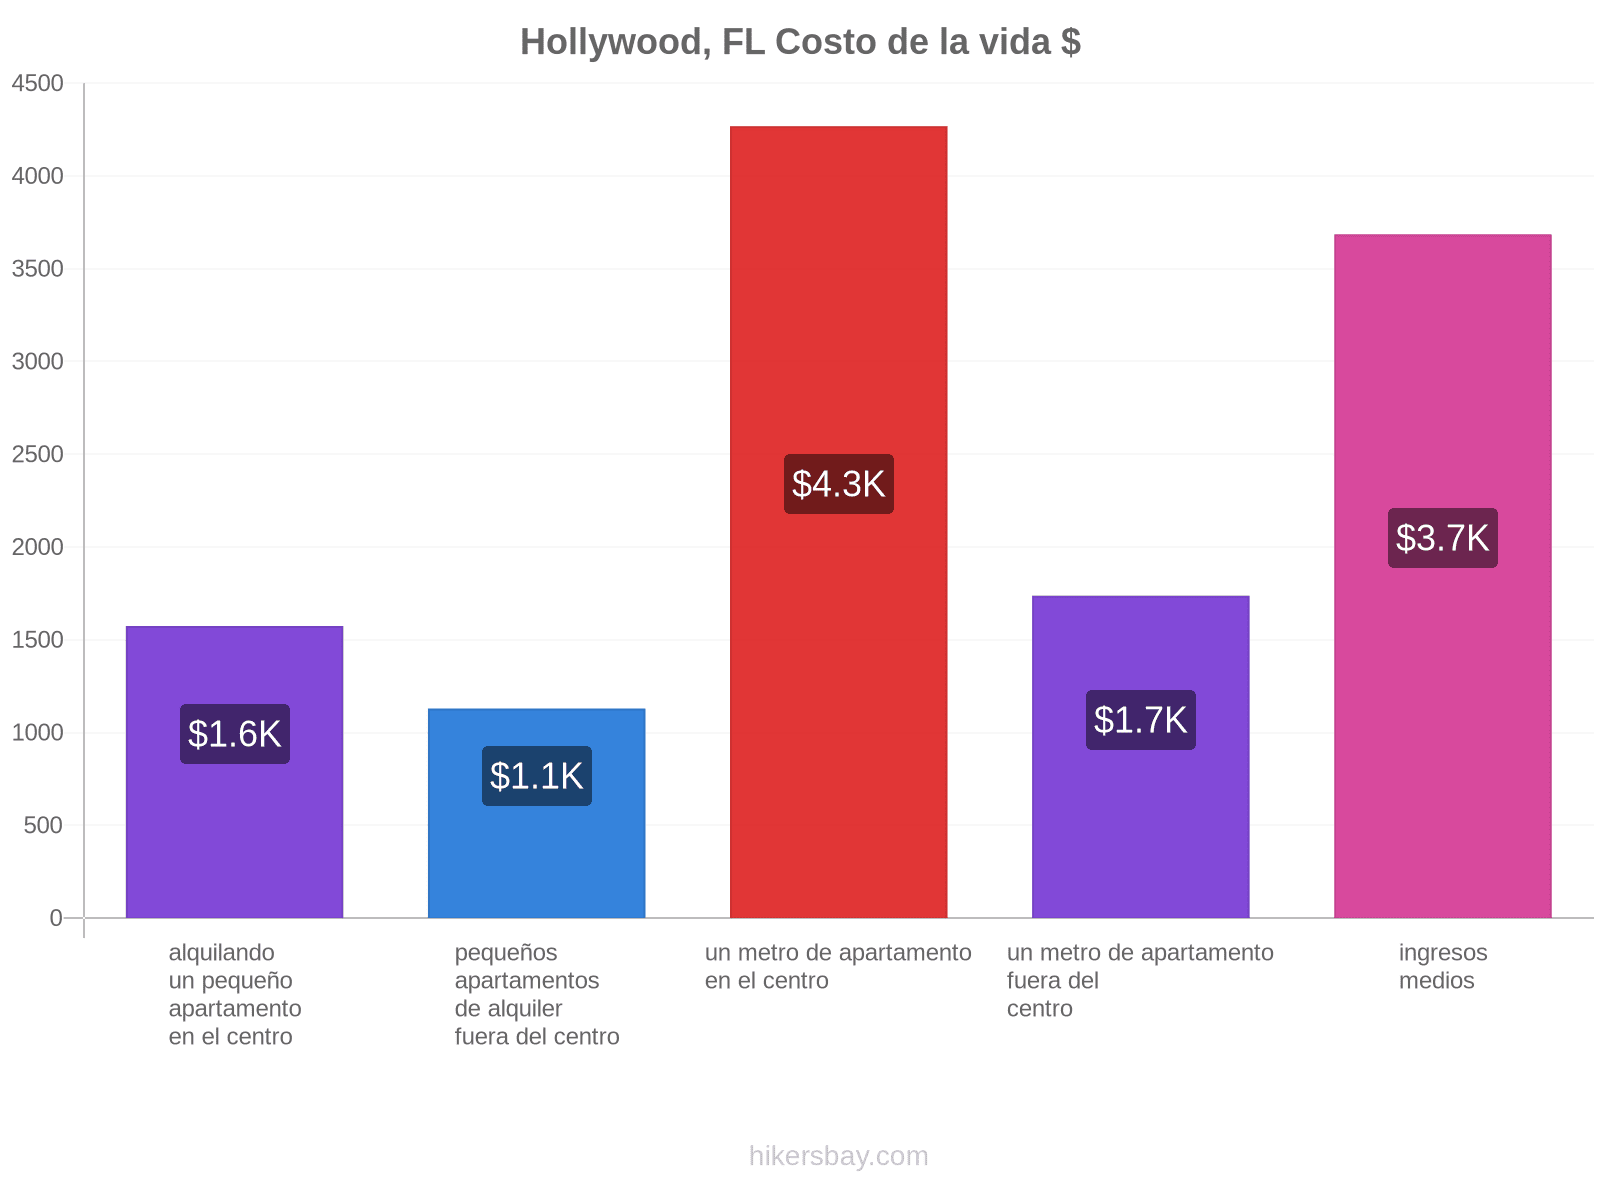 Hollywood, FL costo de la vida hikersbay.com